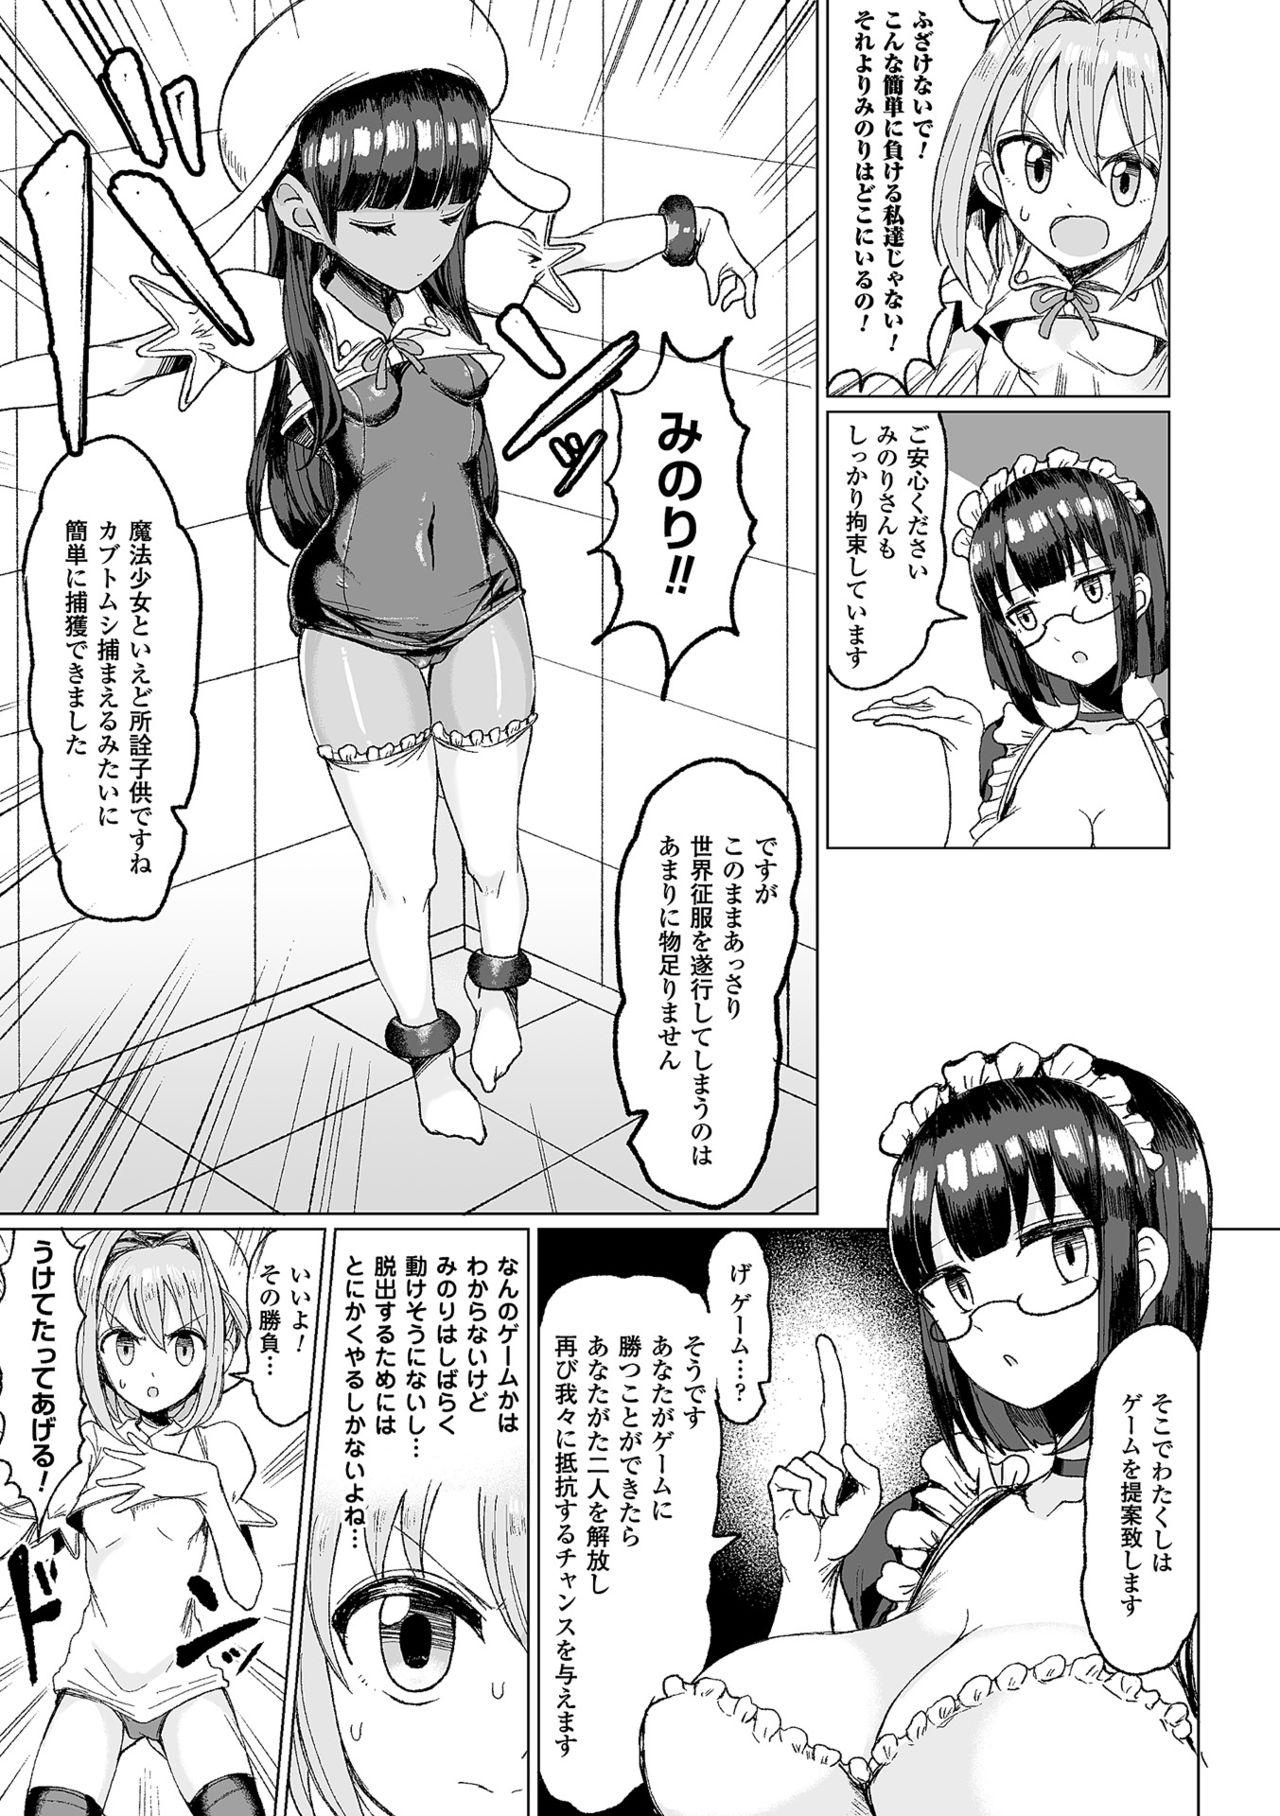 Eating 2D Comic Magazine Kiguzeme Kairaku de Monzetsu Zecchou Vol. 1 Spoon - Page 5